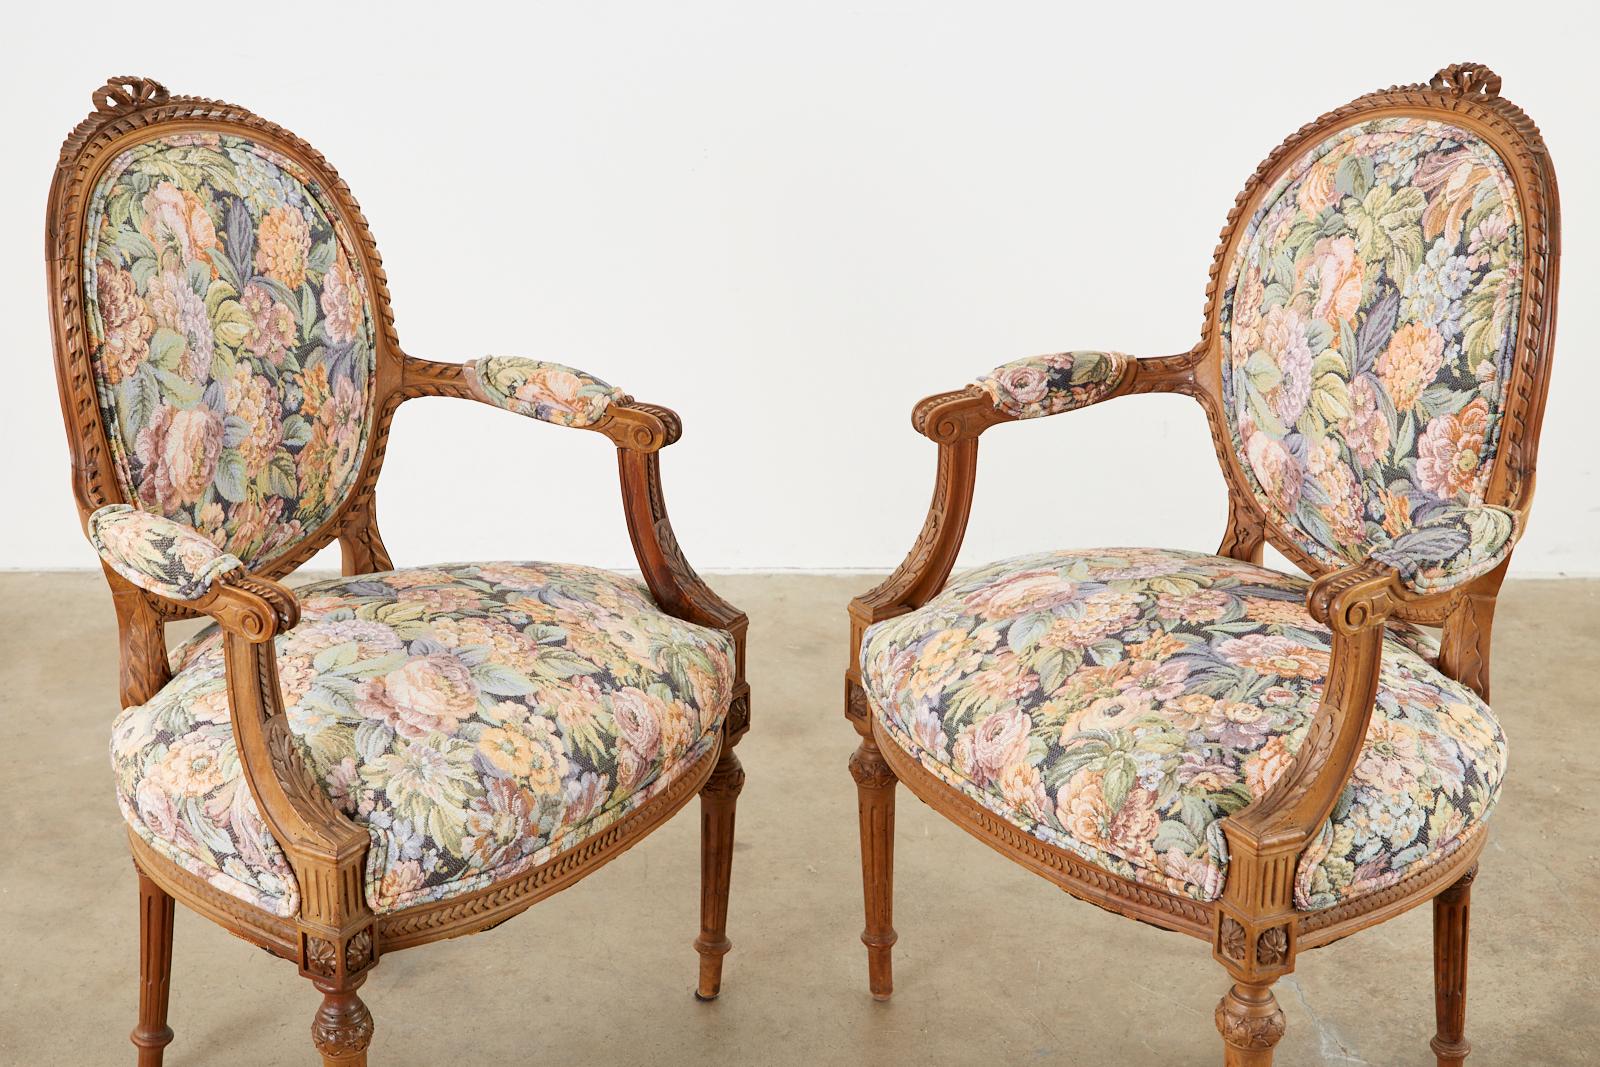 Beeindruckendes Paar französischer geschnitzter Fauteuil-Sessel im Louis-XVI-Stil. Die Stühle verfügen über kunstvoll handgeschnitzte Rahmen mit Seilmotiven, Rosetten, Akanthus und Bandschleifen auf der Oberseite. Gepolstert mit einem